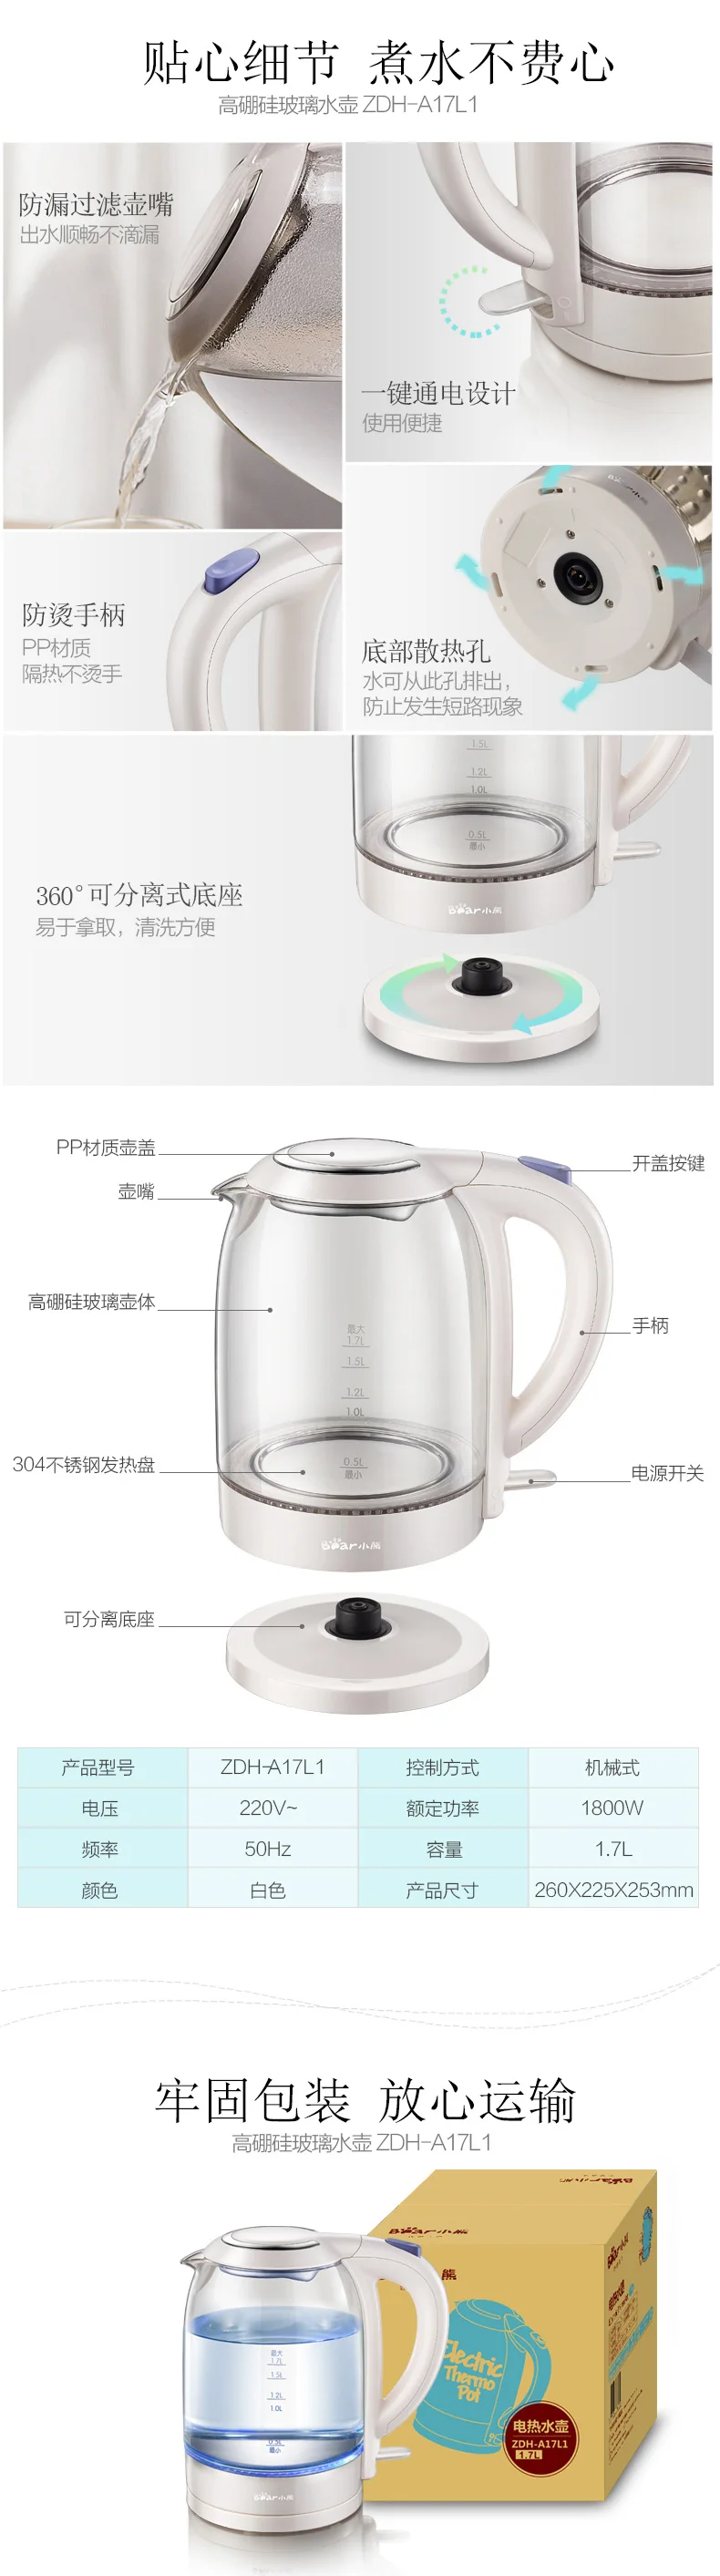 Бытовой стеклянный Электрический чайник большой емкости Автоматическое отключение питания Быстрый горшок мини-чайник для кипячения воды lo109246